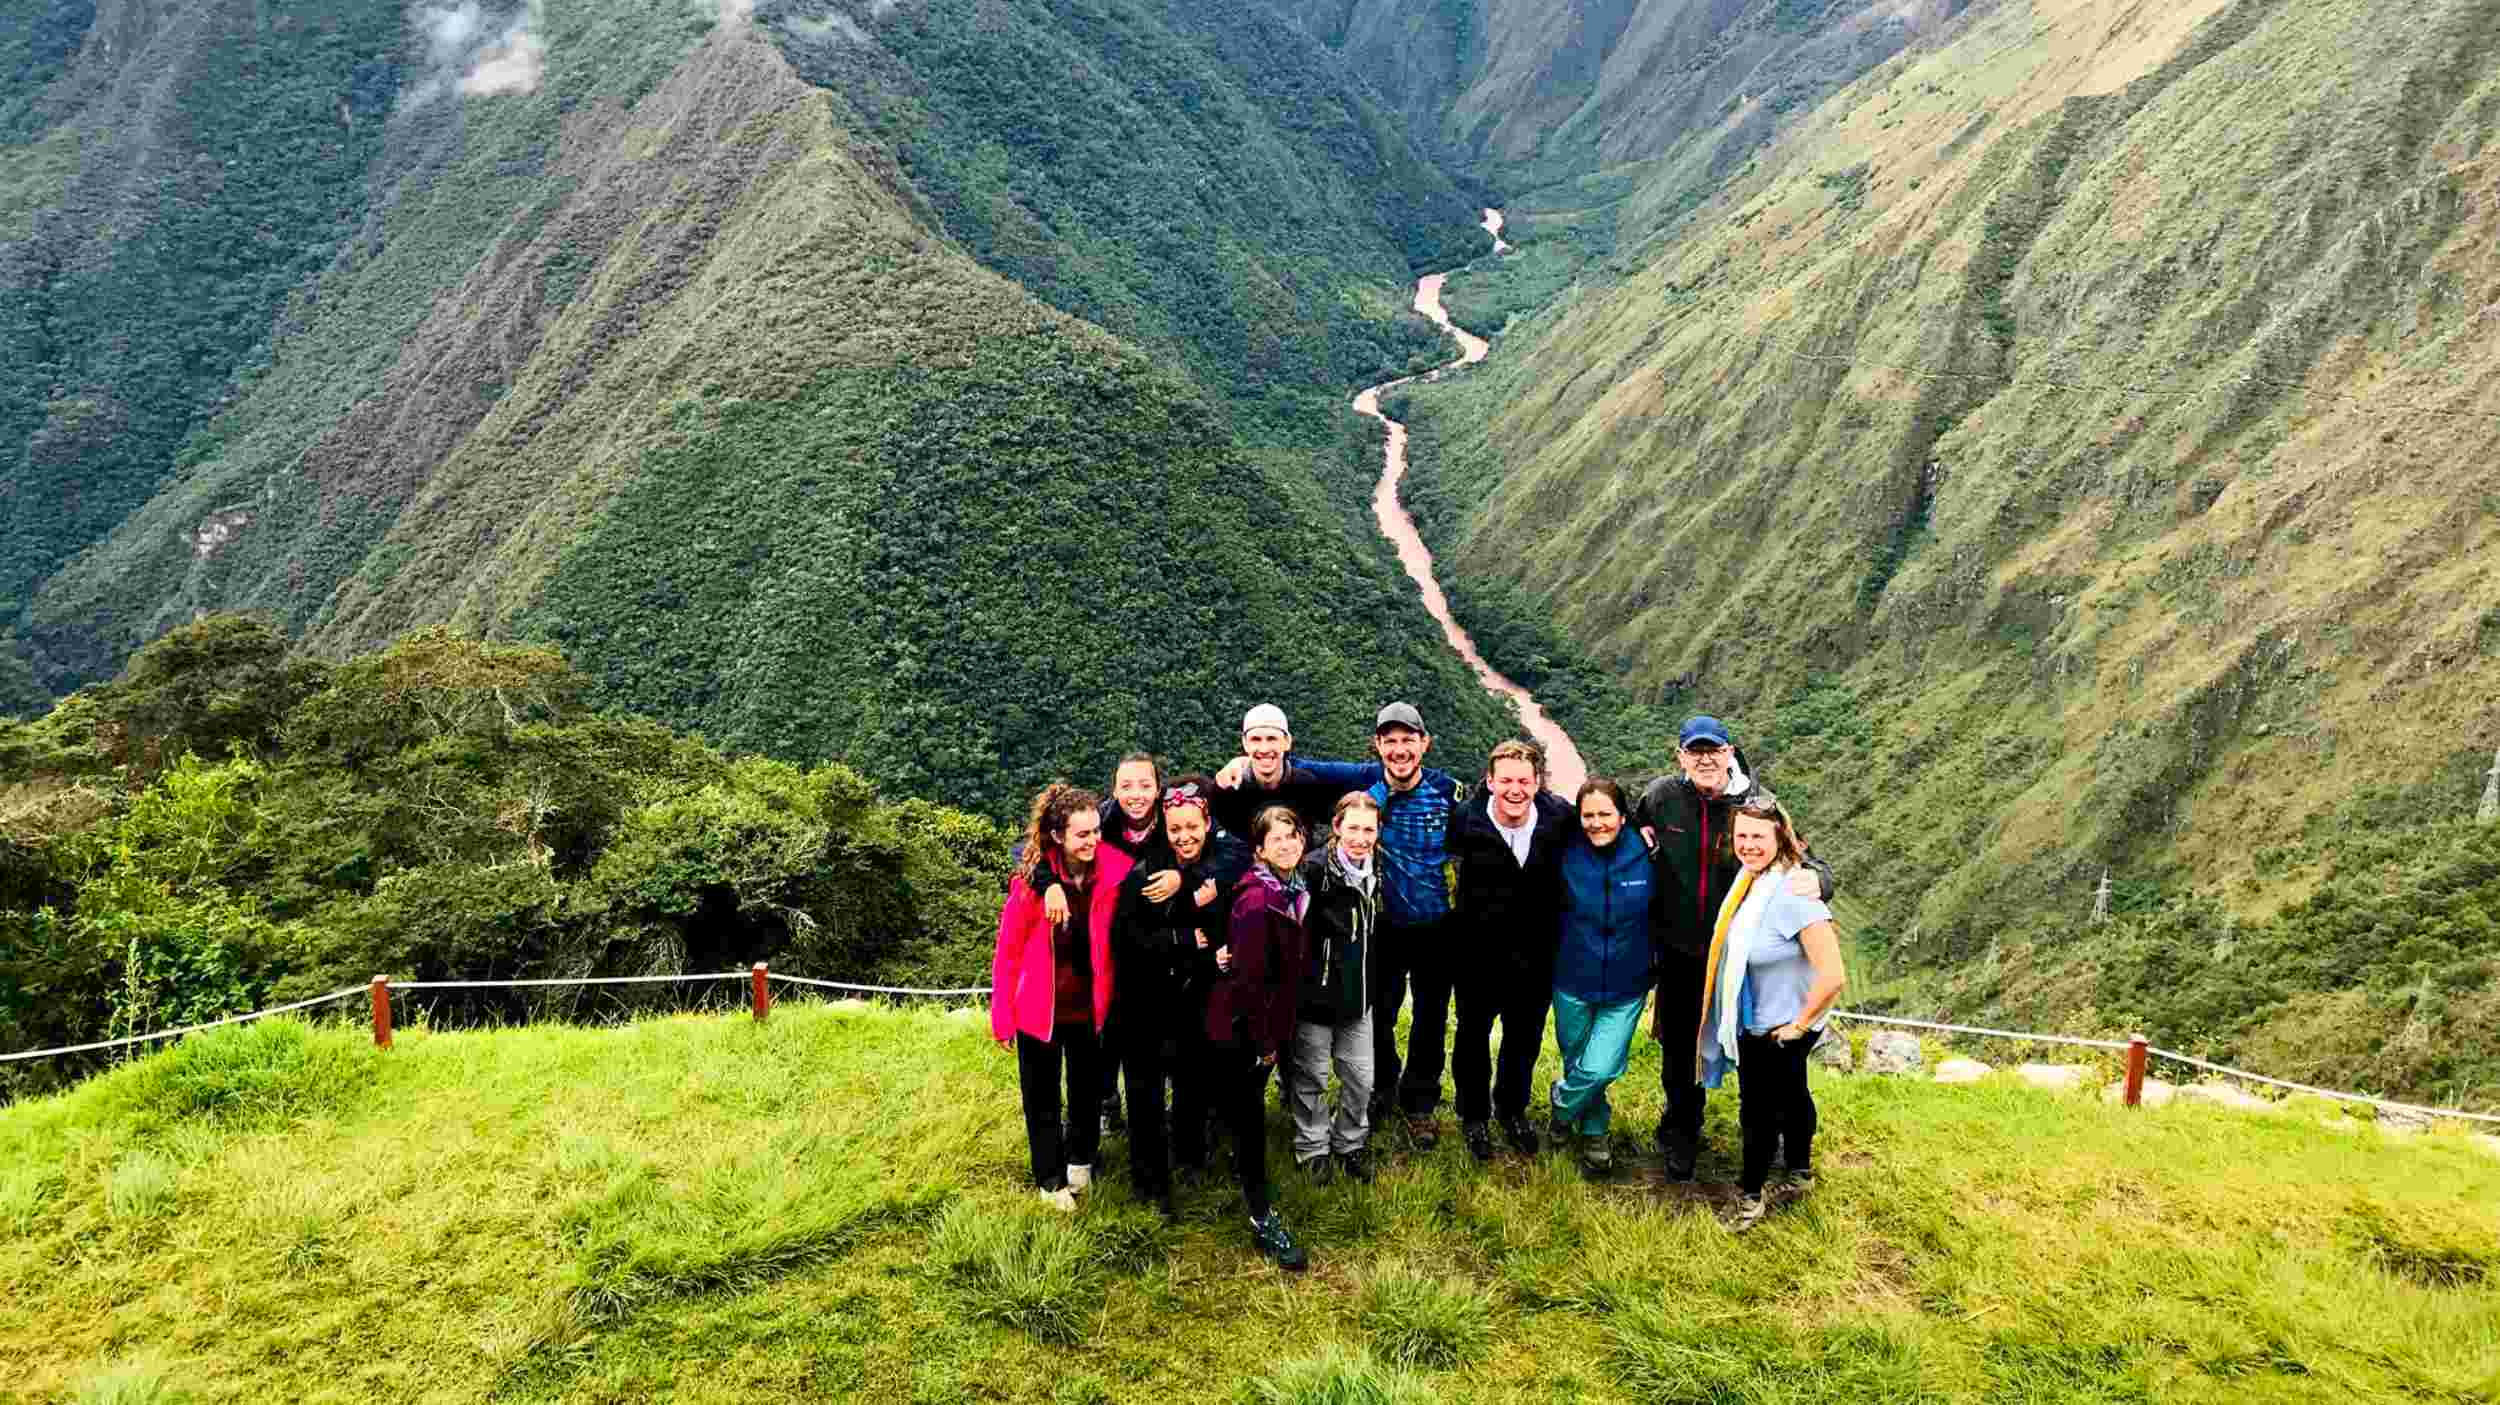 Vista de Machu Picchu - Camino Inca 2 dias a Machu Picchu